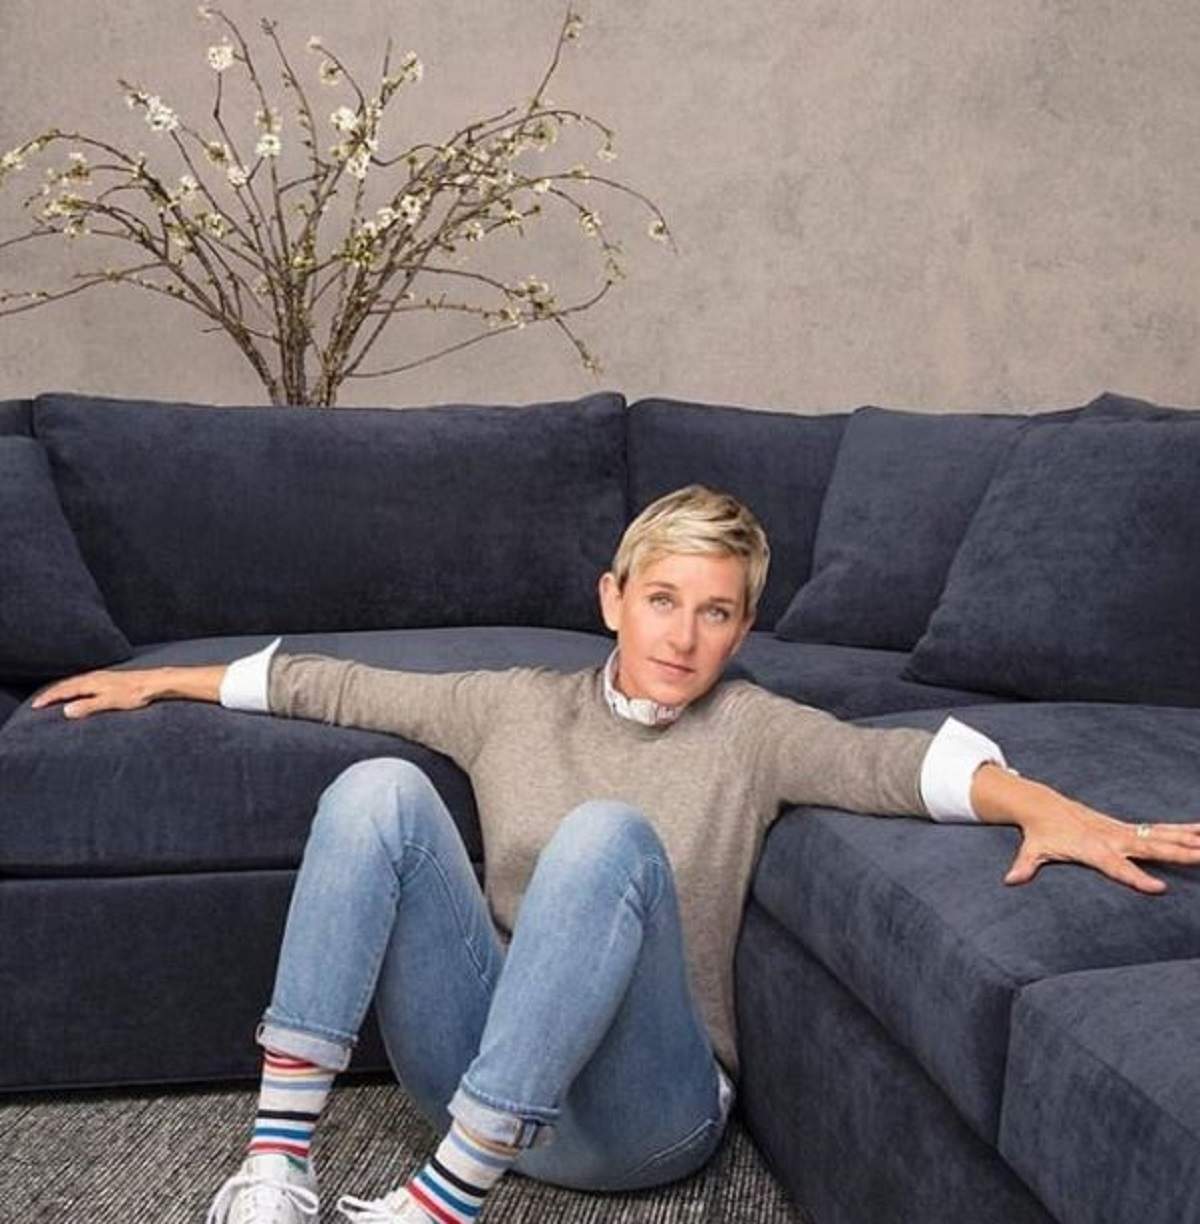 Ellen DeGeneres, gata să spună „adio” emisiunii care a făcut-o celebră! Motivul șocant al prezentatoarei tv